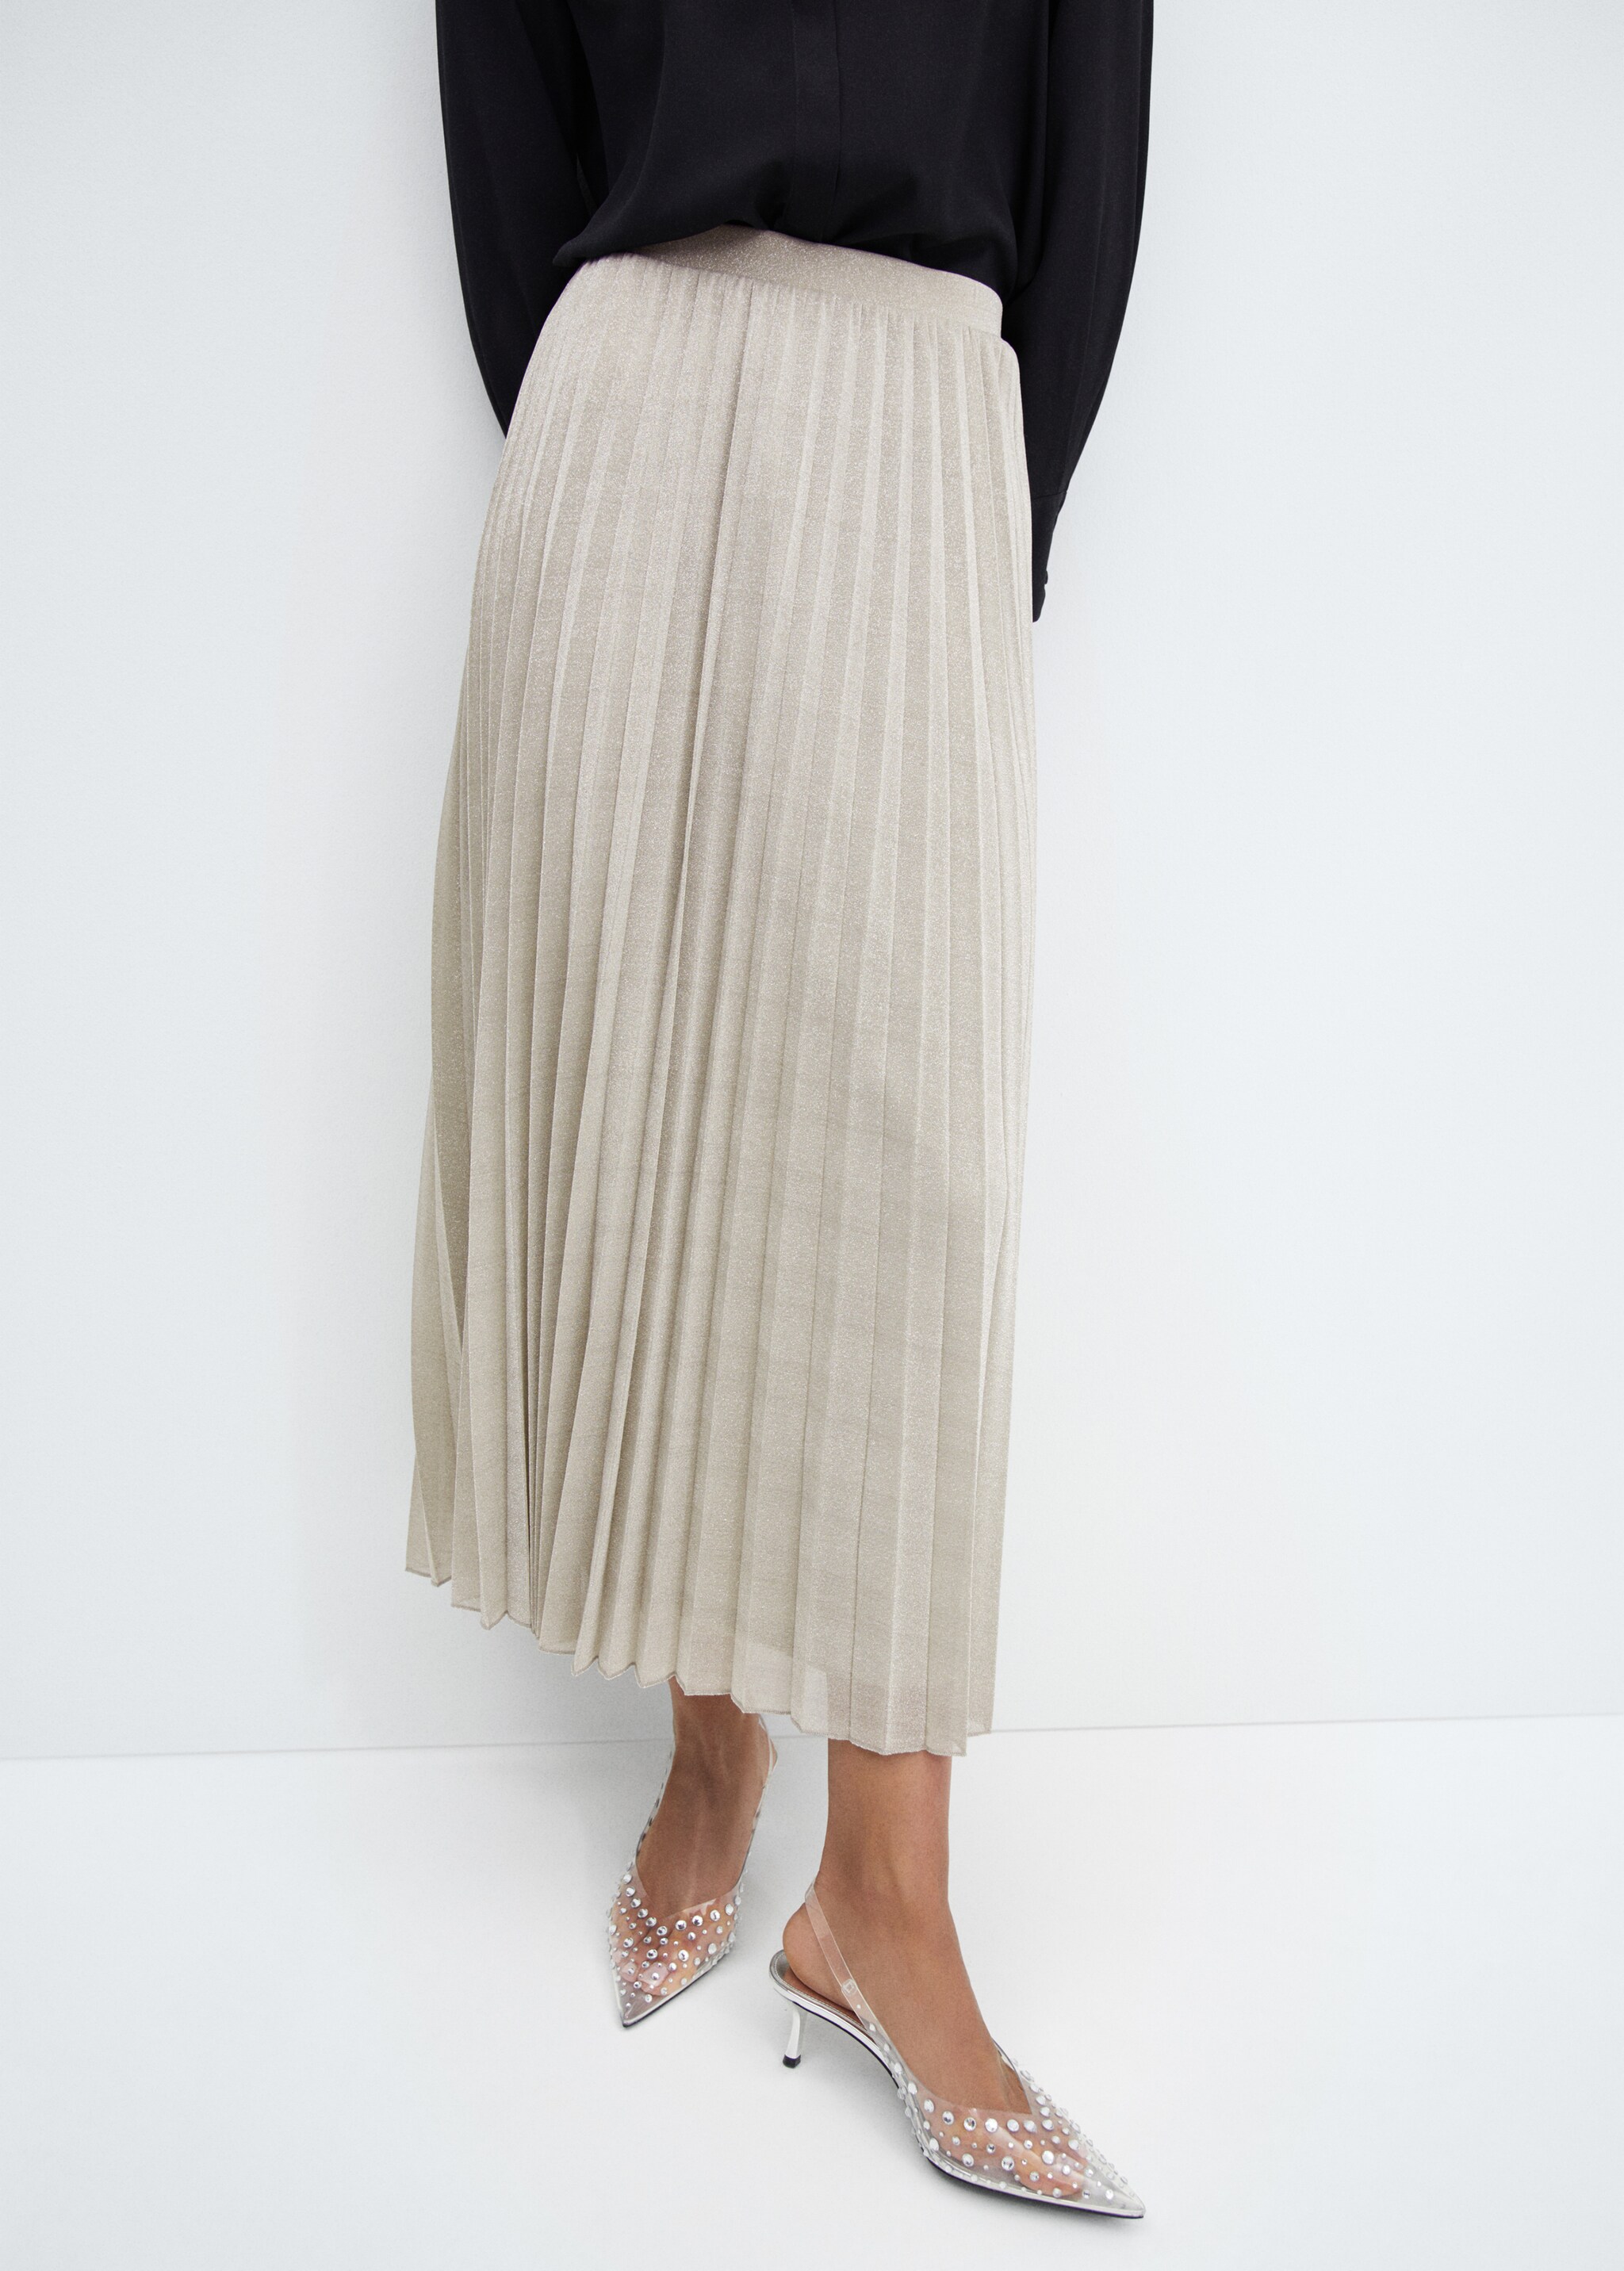 Pleated lurex skirt - Medium plane